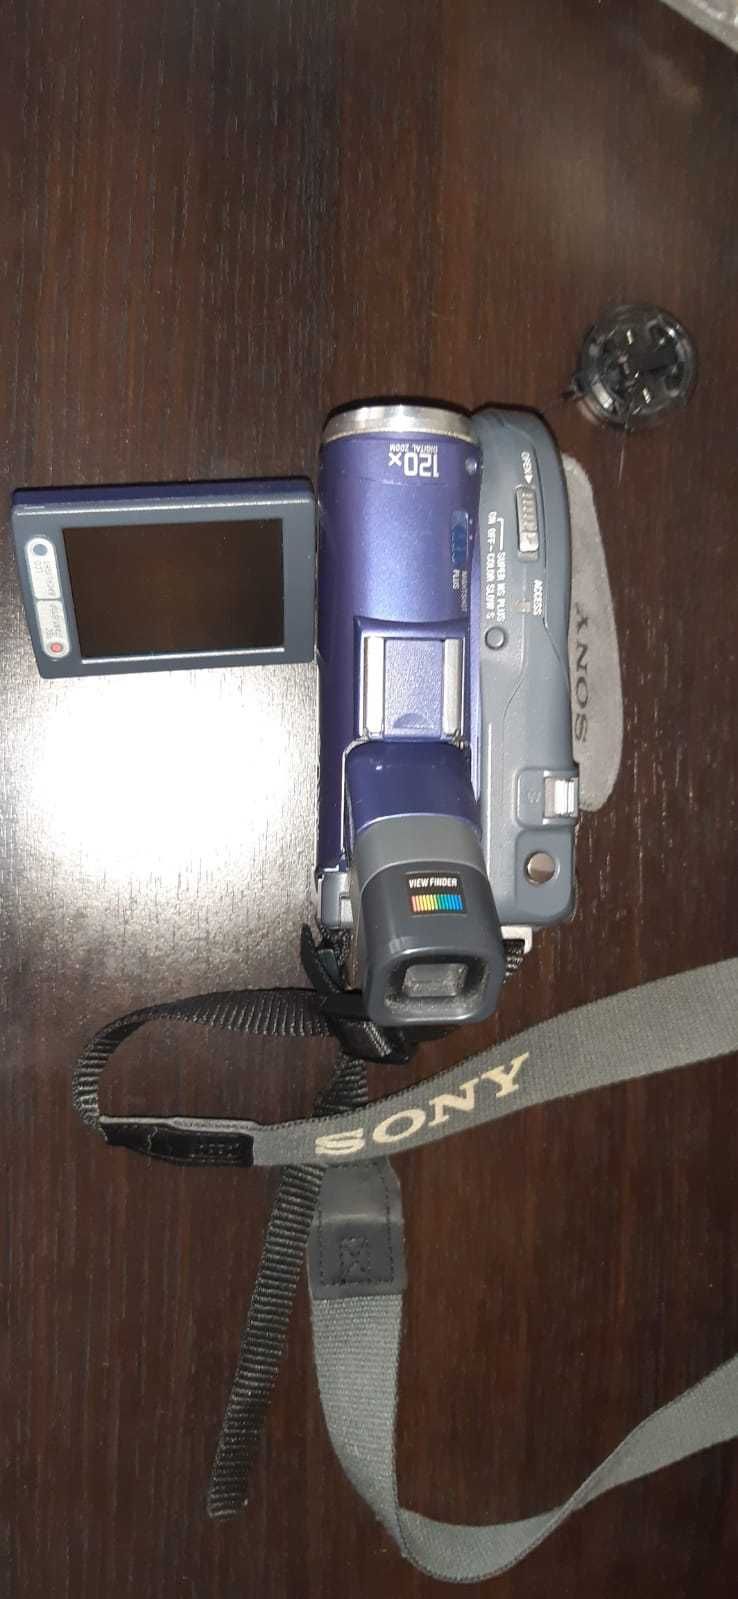 Продам видеокамеру SONY HANDYCAM DCR DVD91E